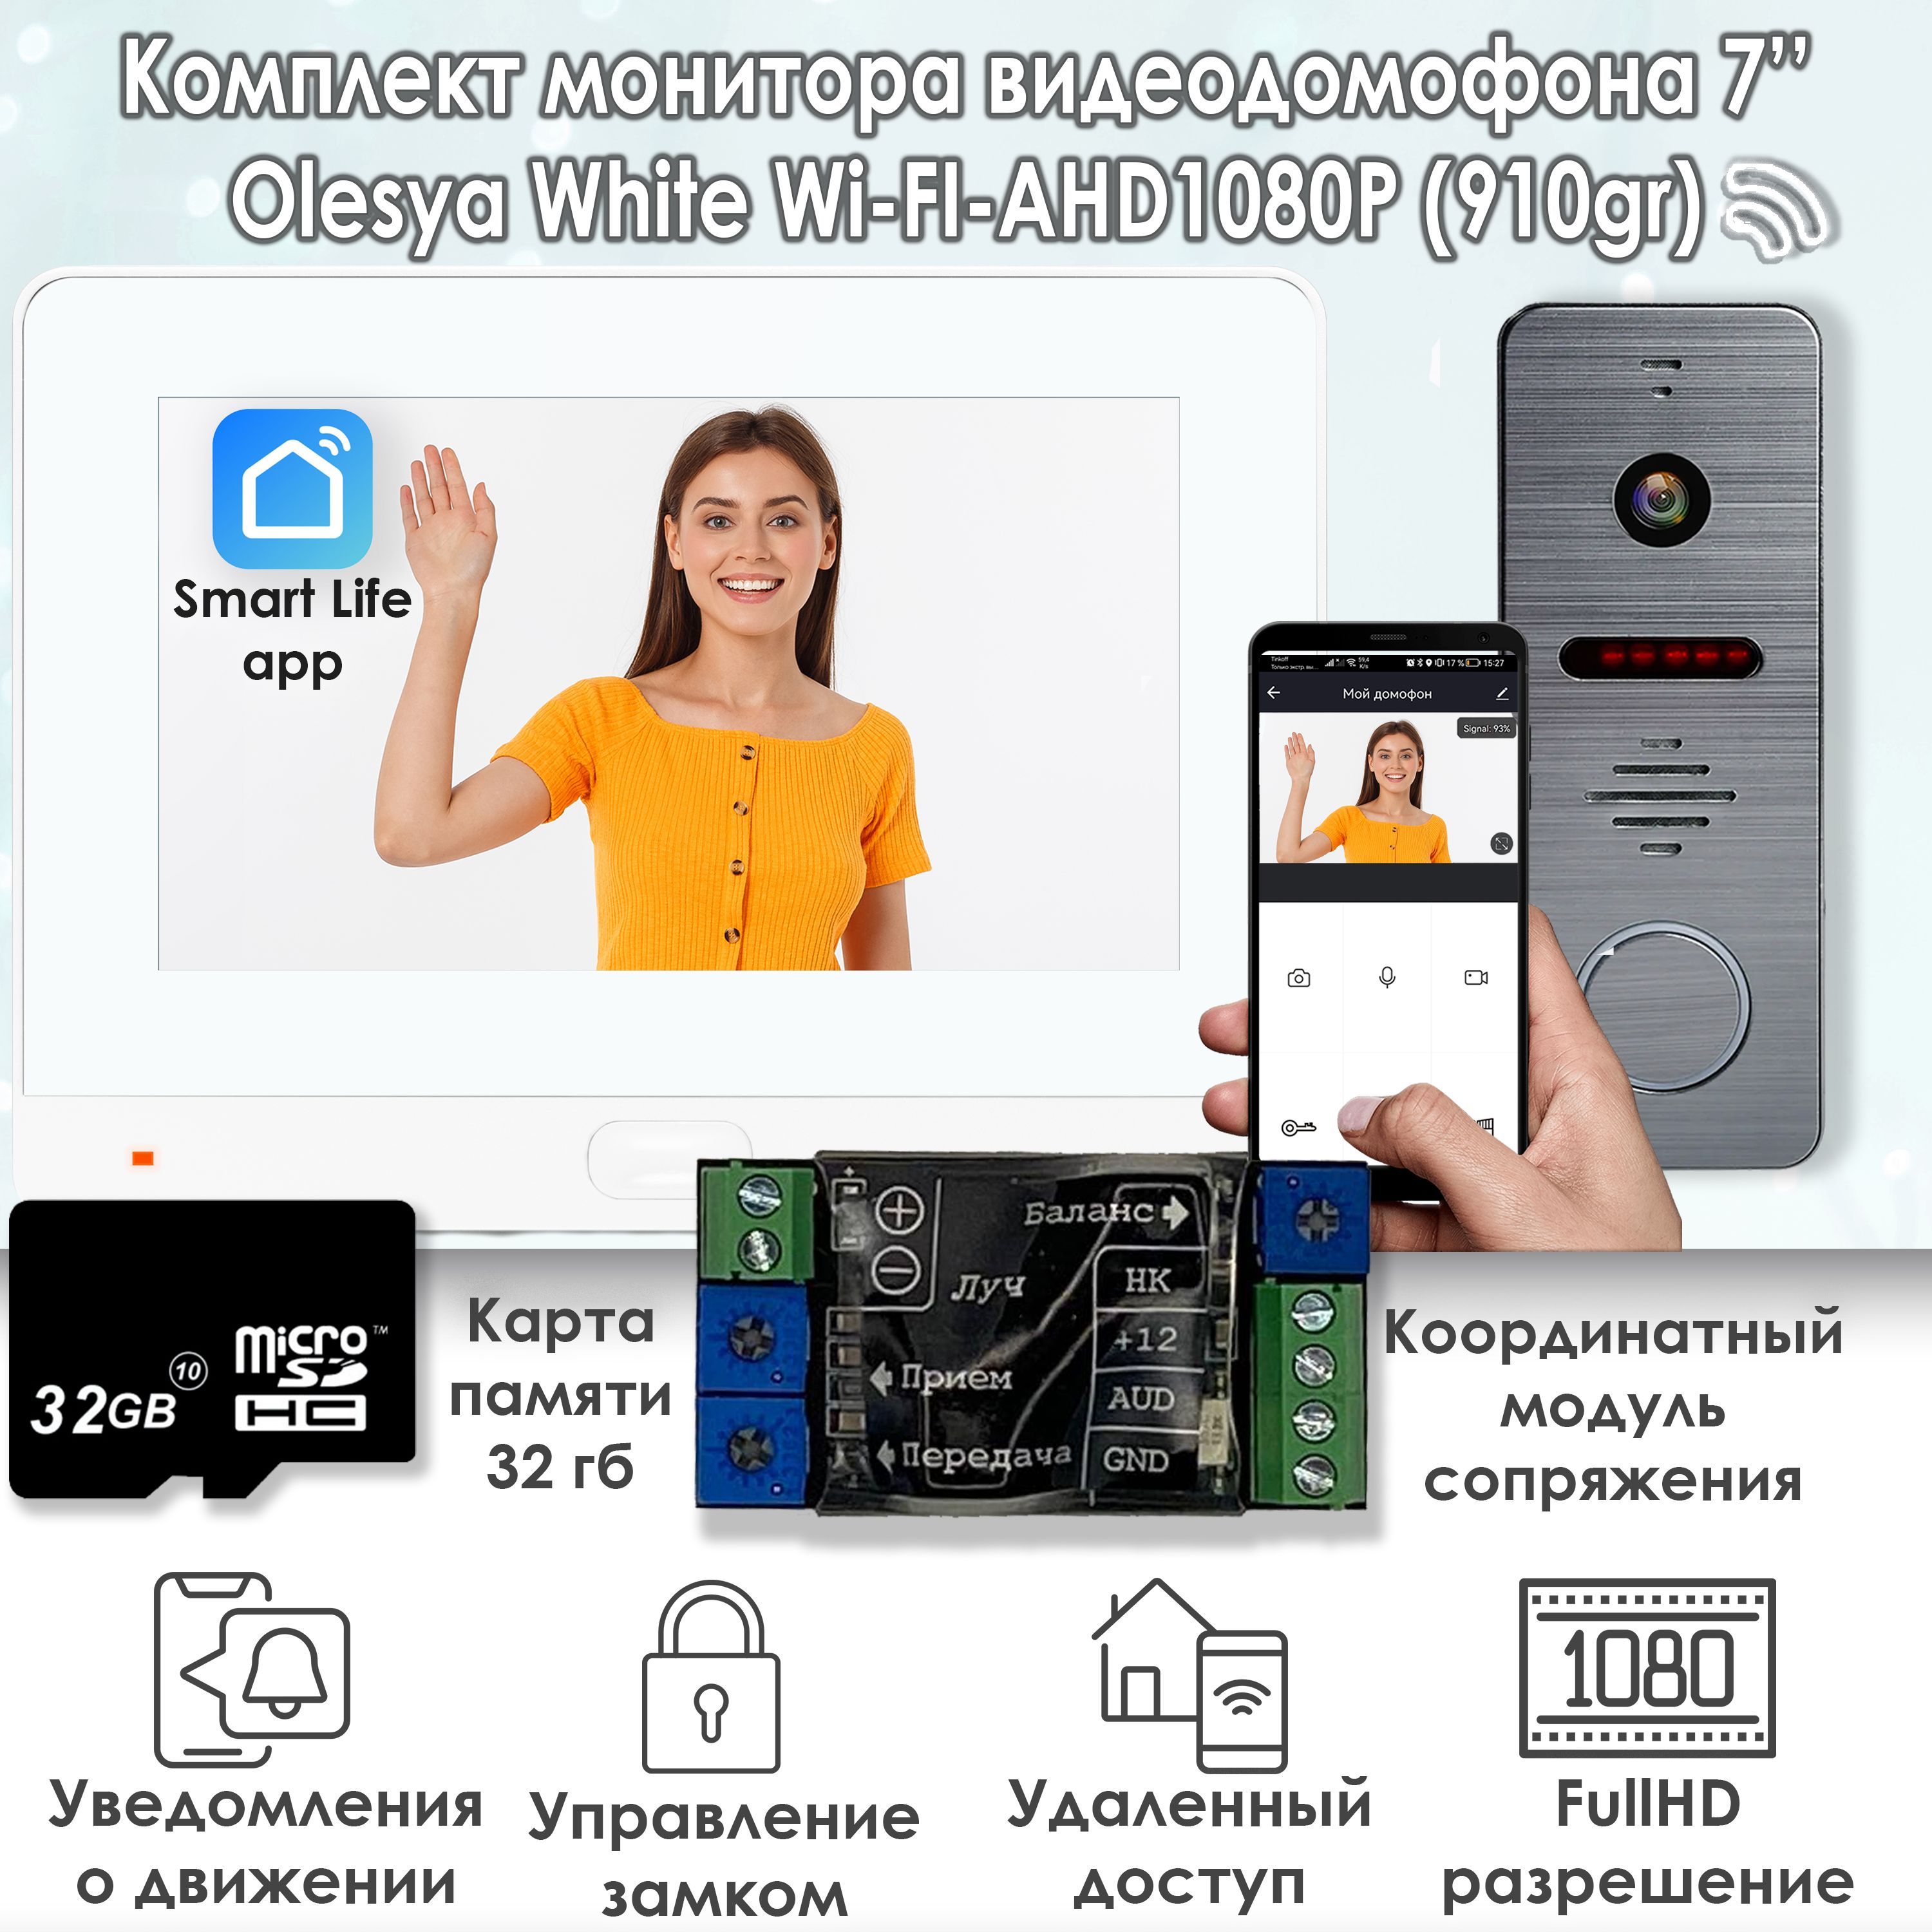 Комплект видеодомофона Alfavision Olesya Wi-Fi AHD1080P Full HD (910gr), Белый